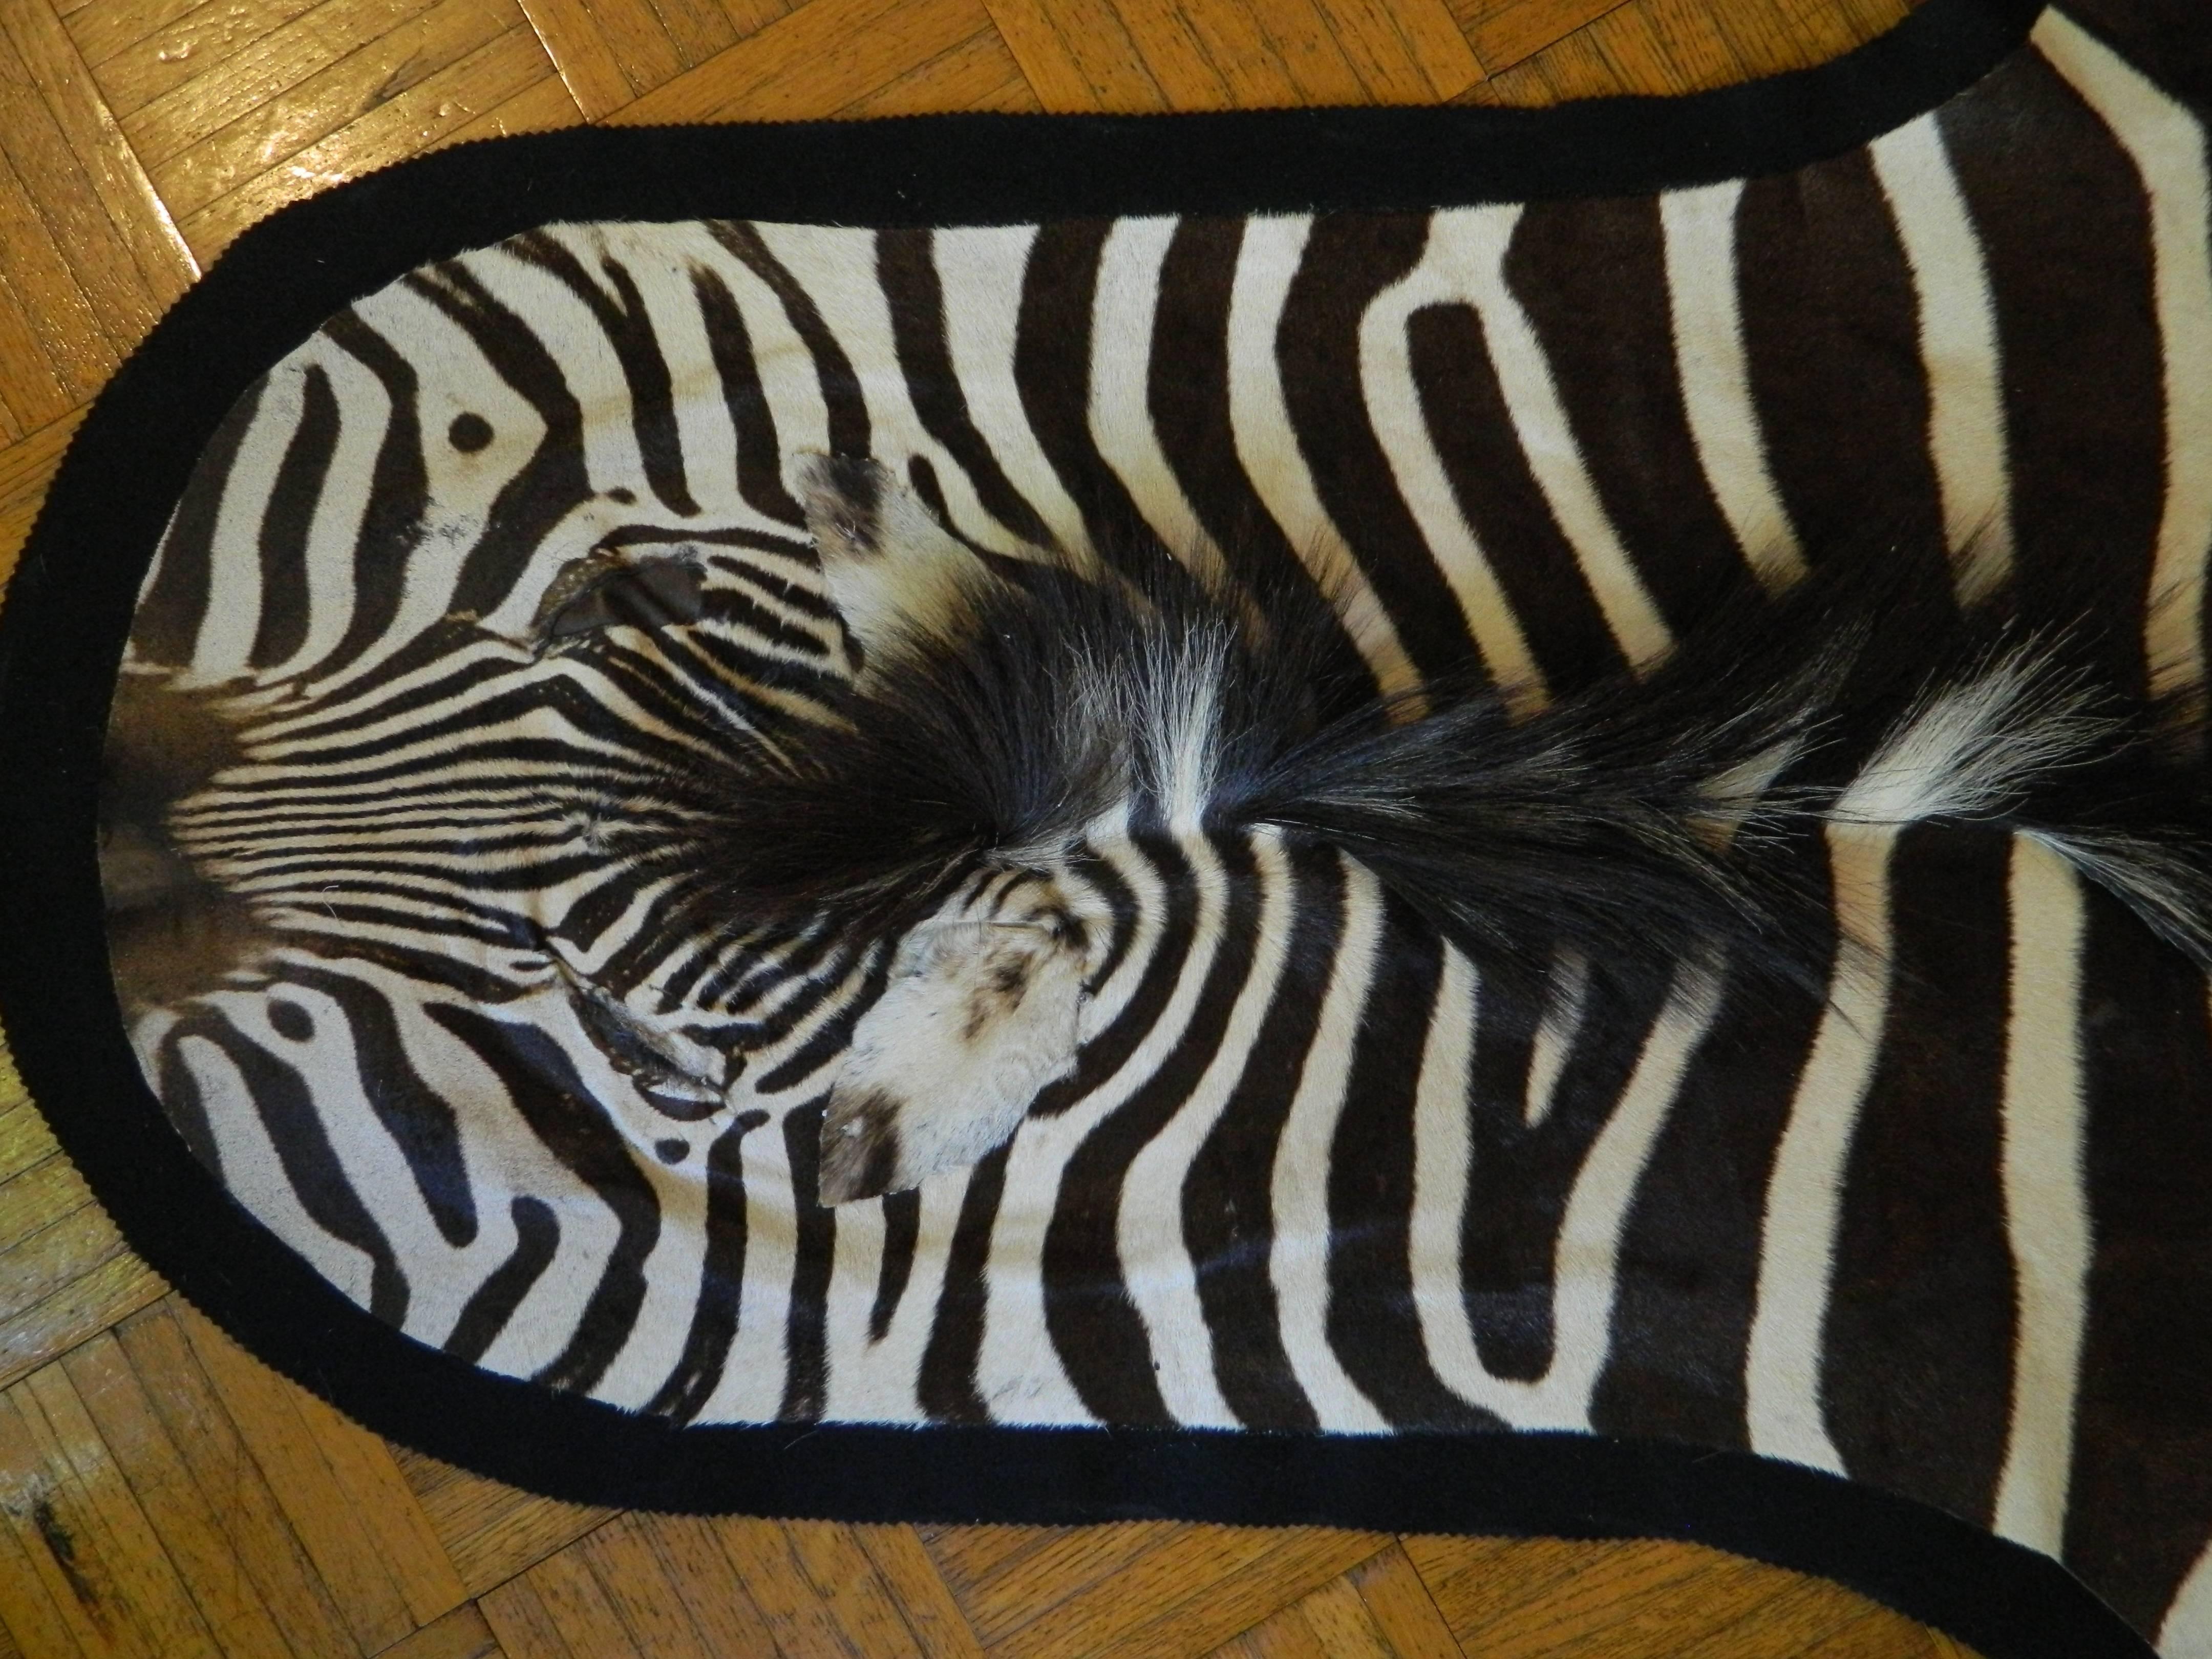 New great quality Burchel zebra hide
Size: 87